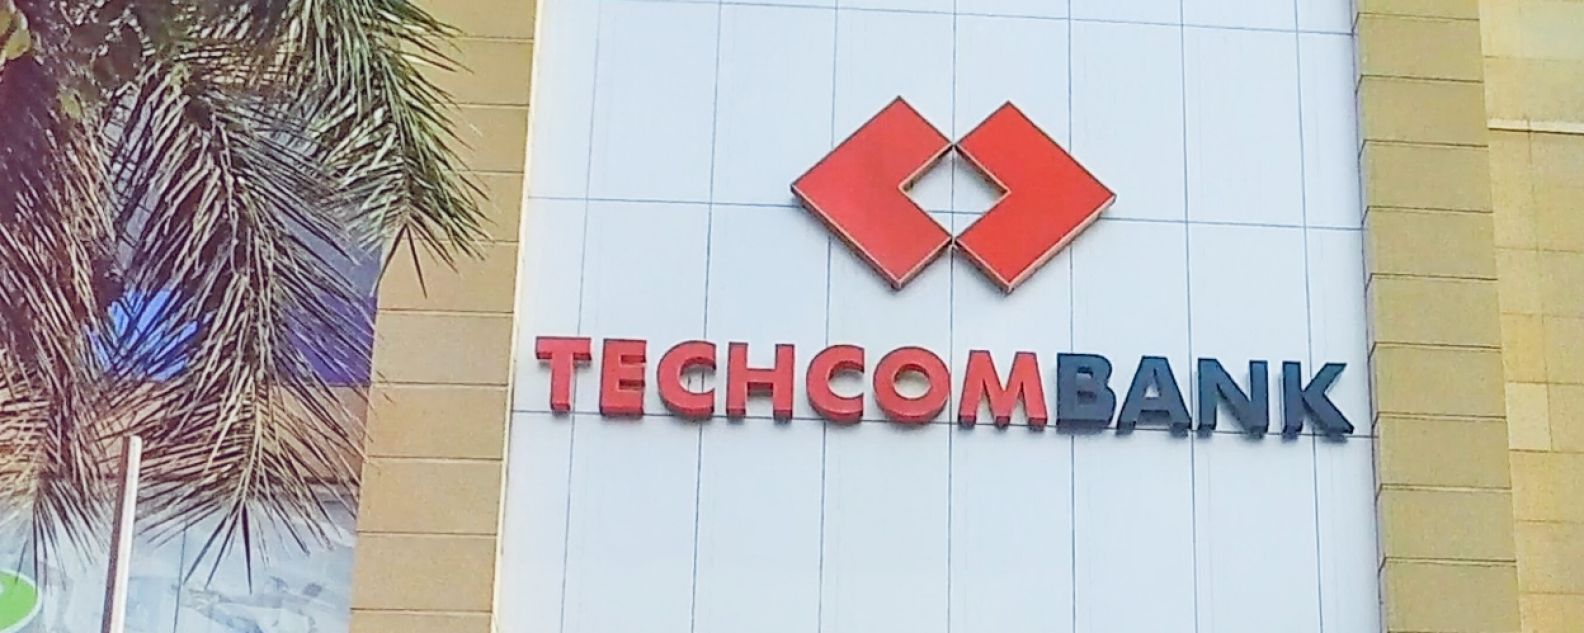 Außenansicht des Techcombank Gebäudes